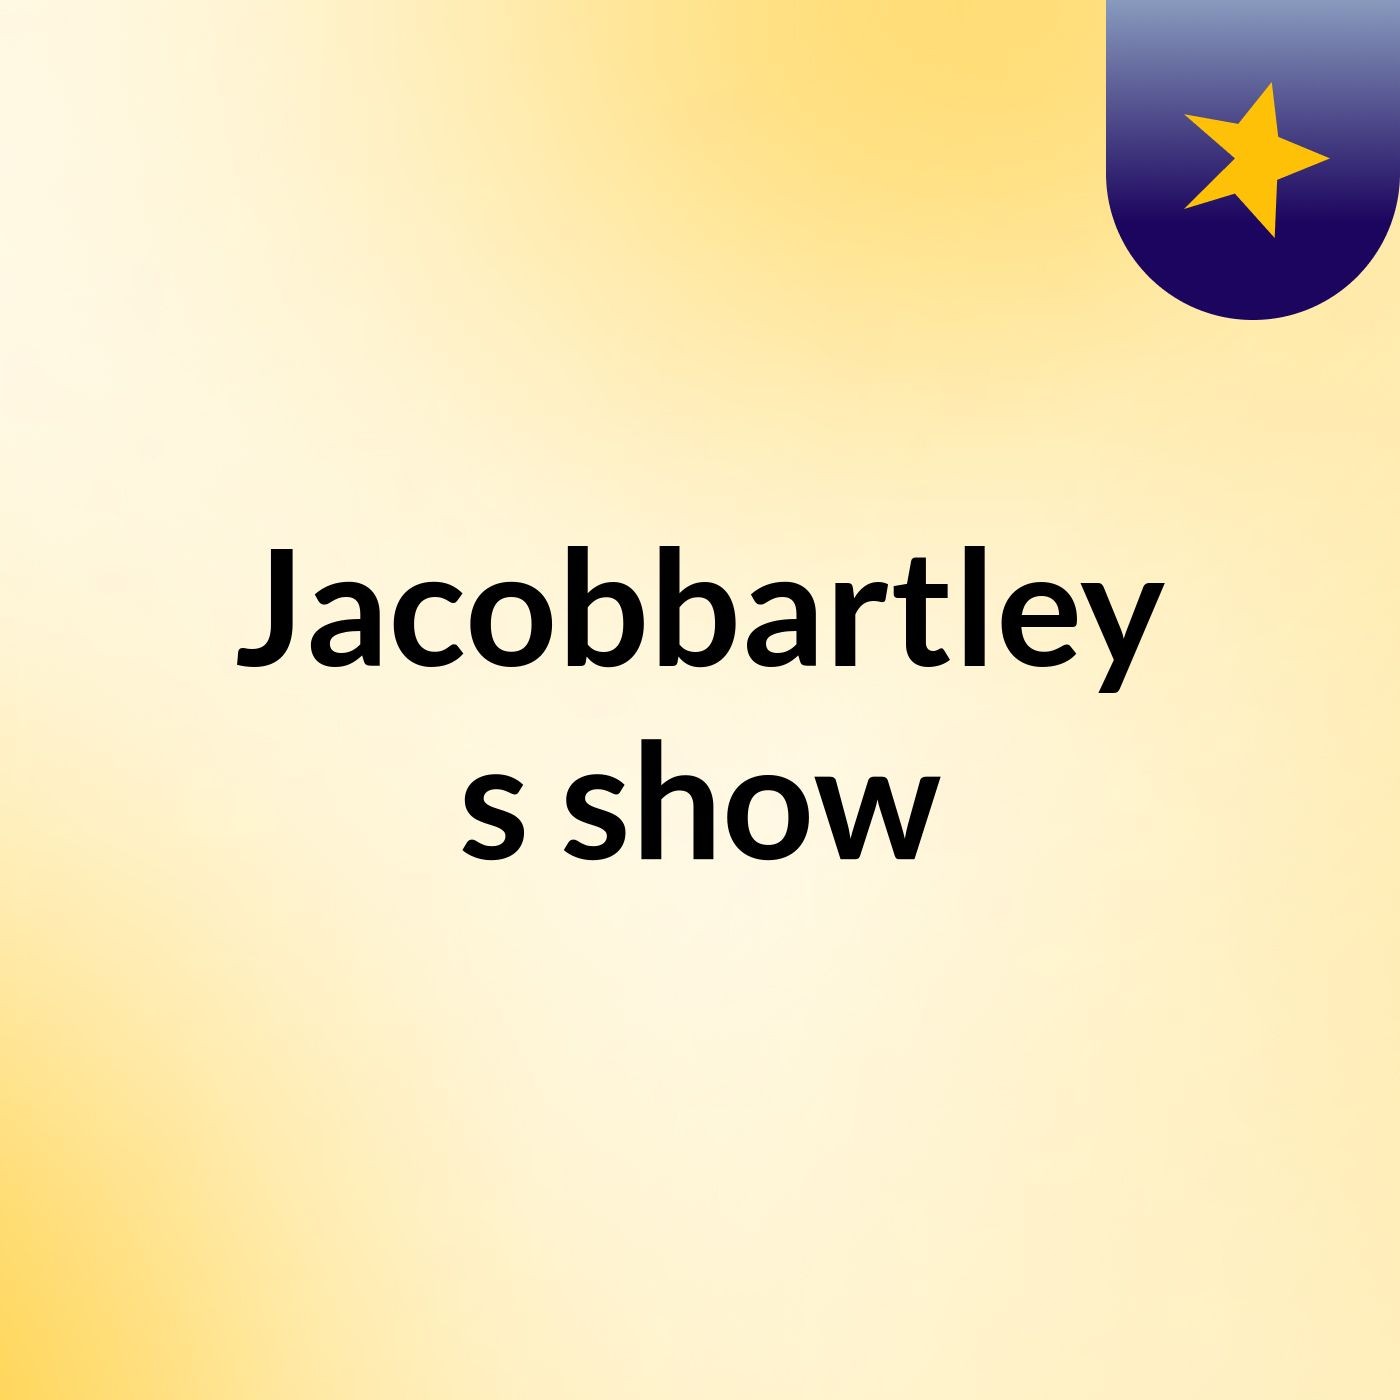 Episode 16 - Jacobbartley's show